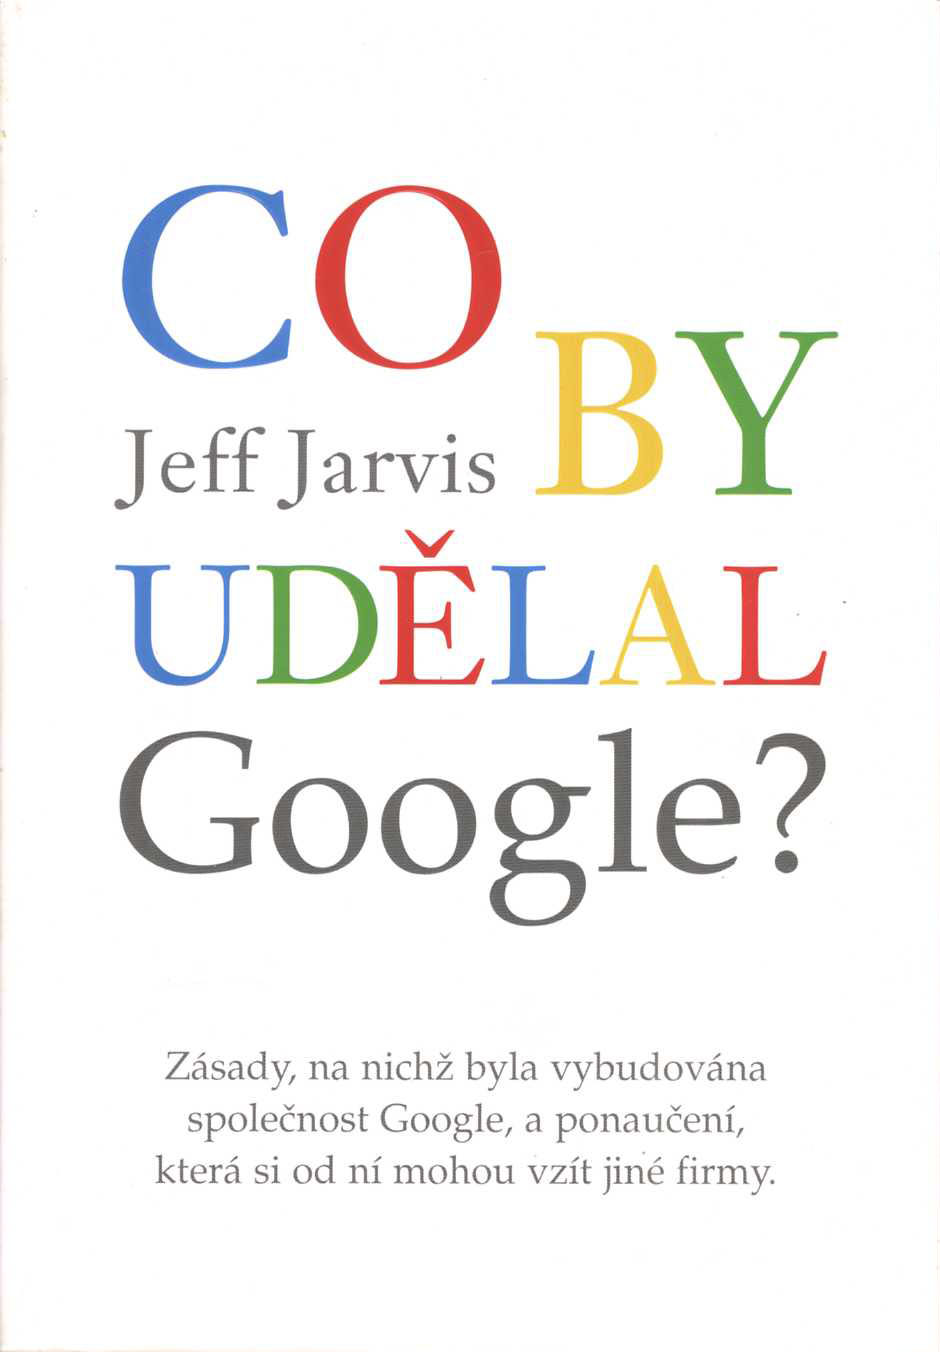 Co by udělal Google? (Jeff Jarvis)